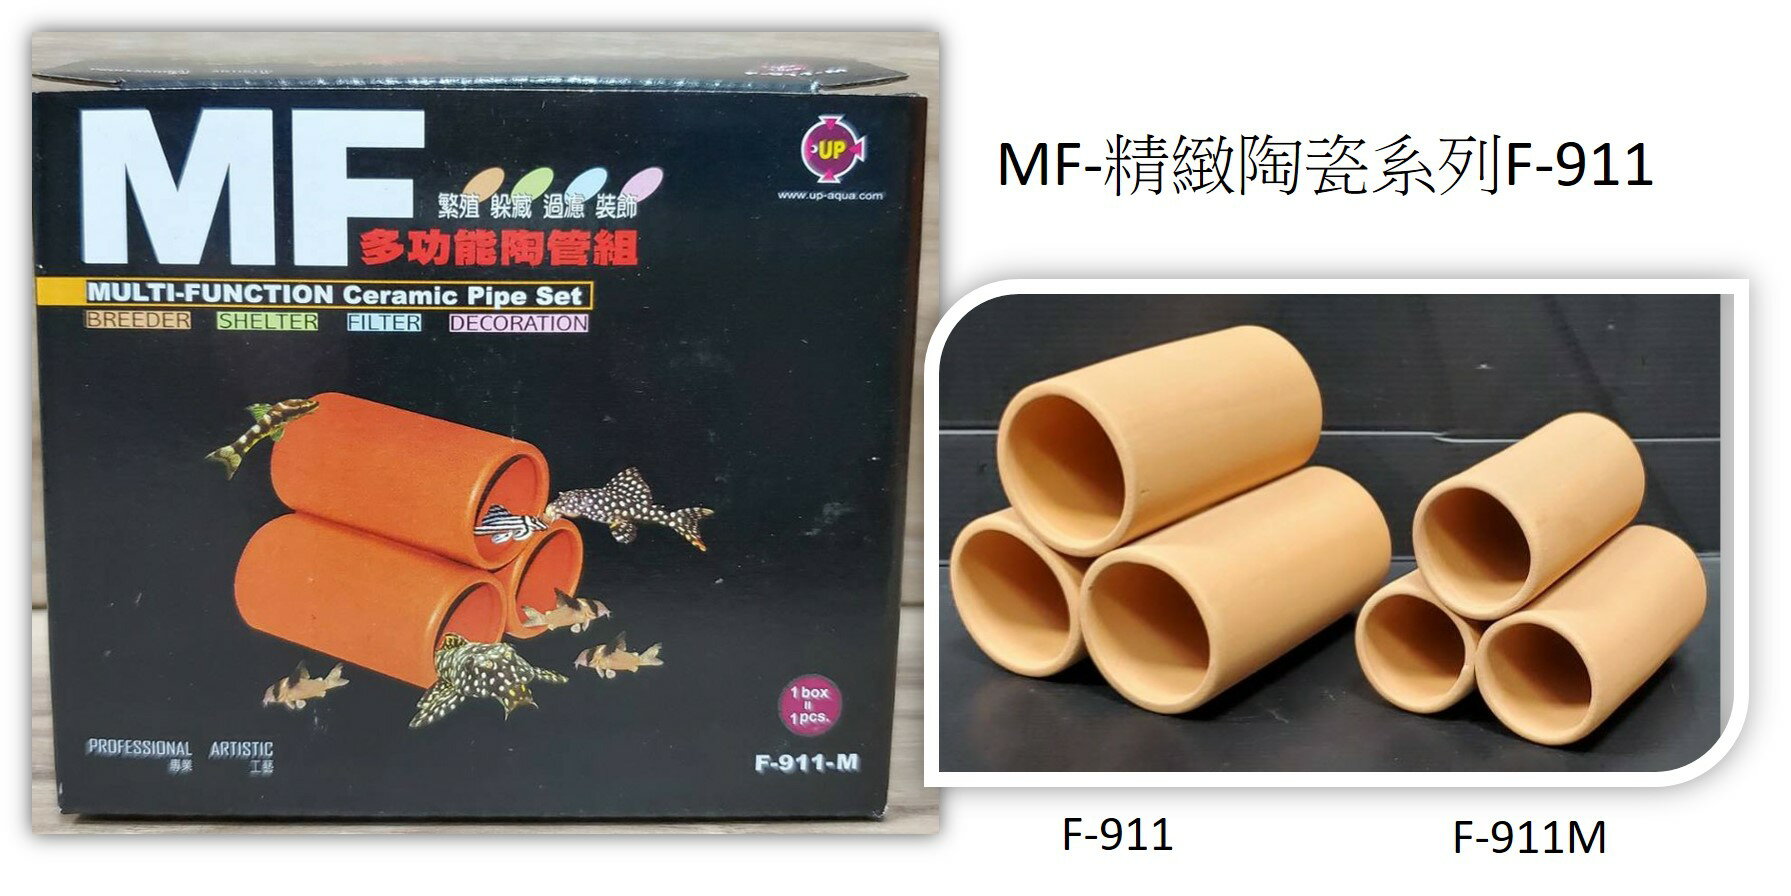 UP MF-精緻陶瓷F-911 多功能陶管組-紅3管(M/L) 造景裝飾陶瓷躲藏繁殖異型蝦屋螯蝦| 星星水族爬蟲百貨直營店|